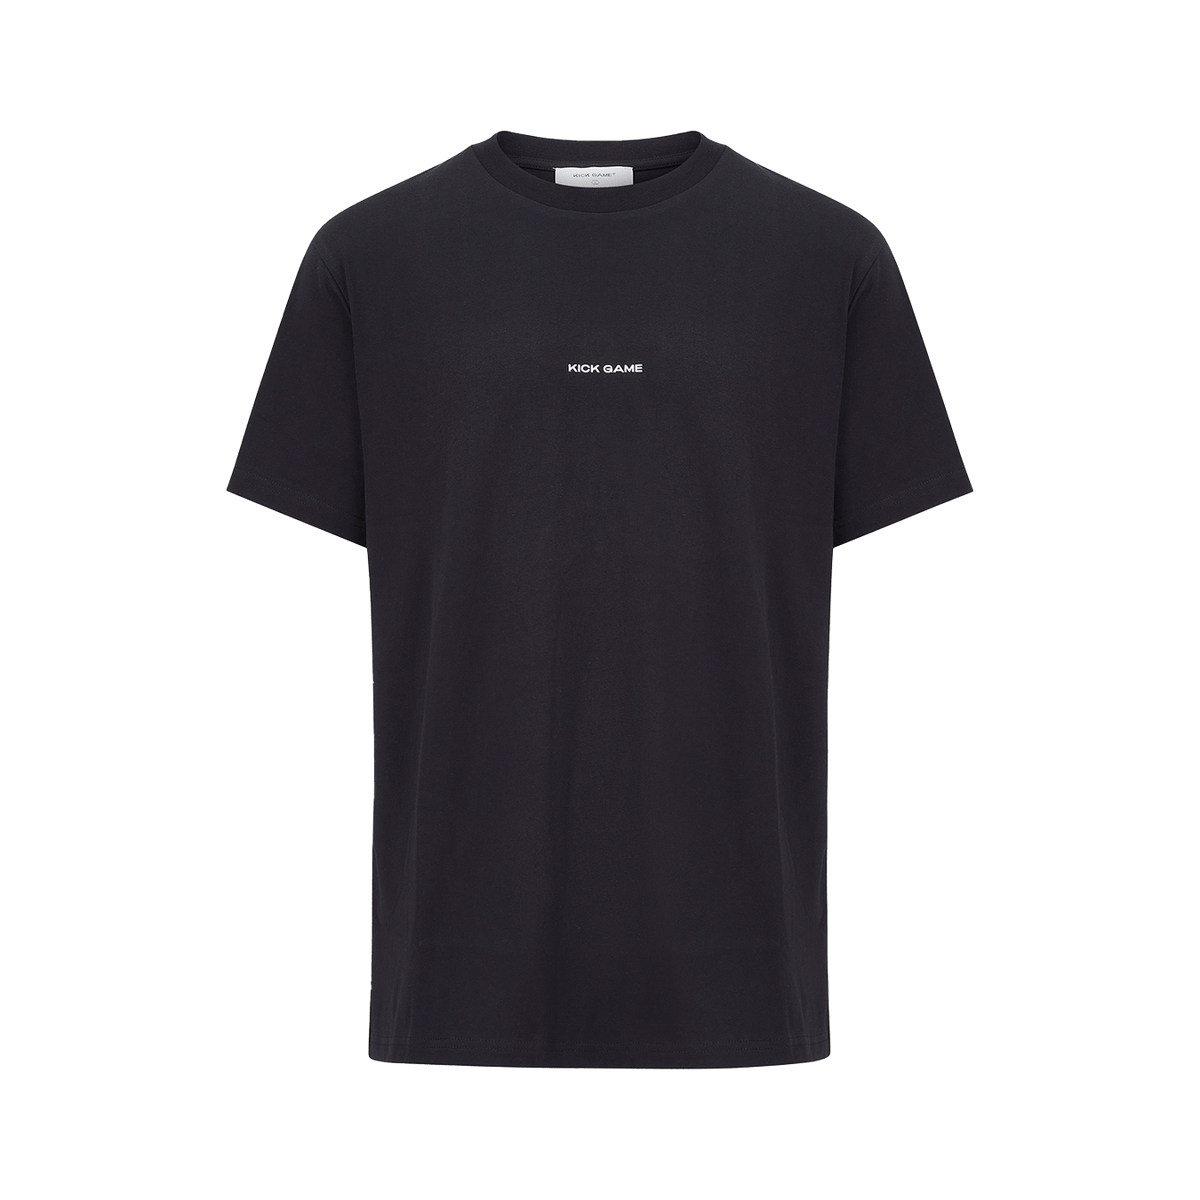 JuzsportsShops Logo T-Shirt 'Black' - JuzsportsShops